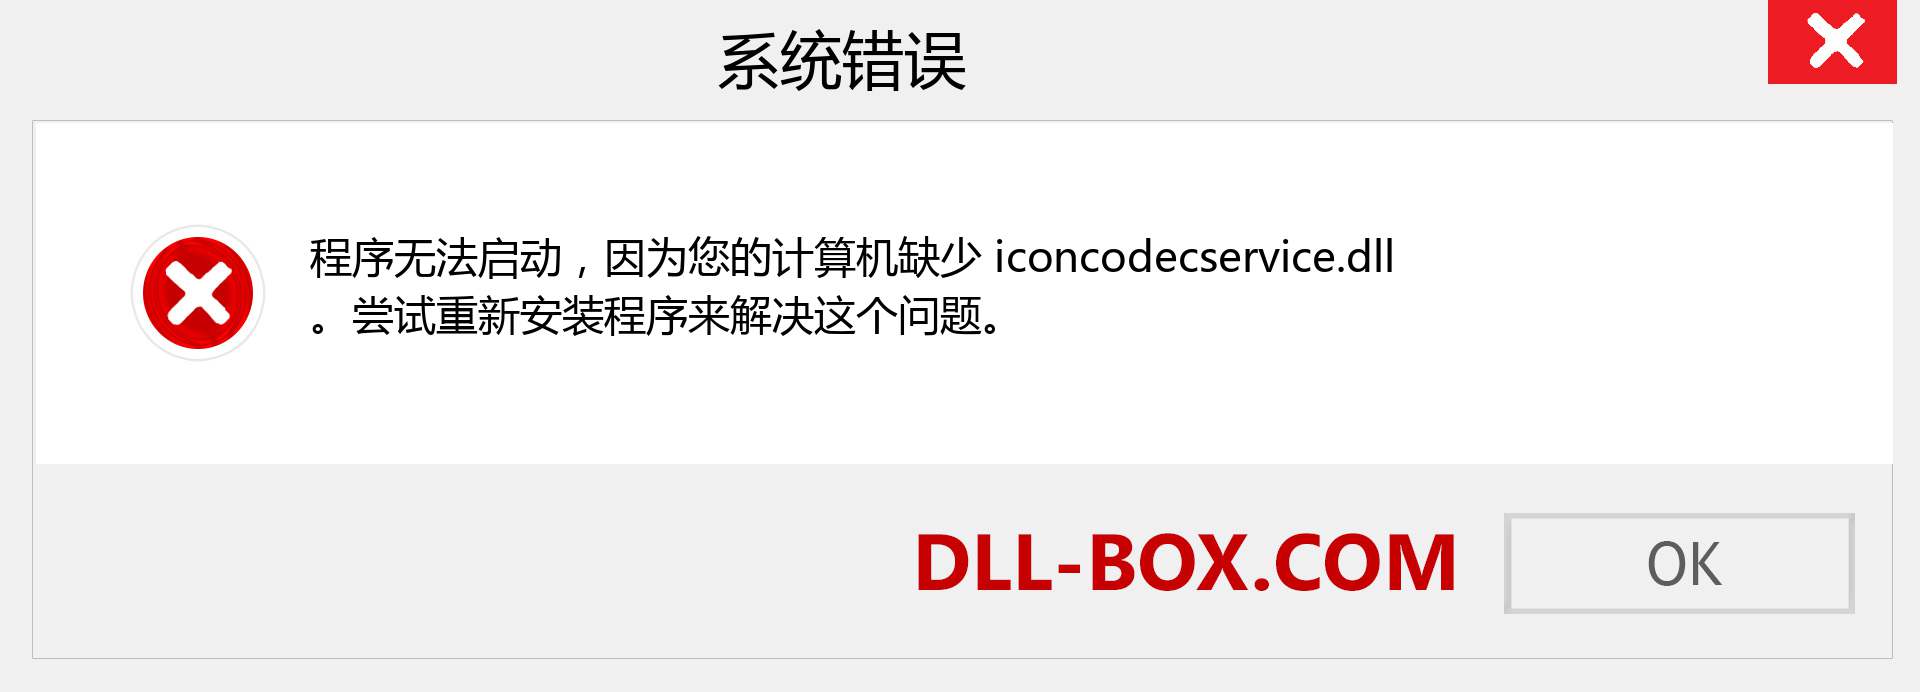 iconcodecservice.dll 文件丢失？。 适用于 Windows 7、8、10 的下载 - 修复 Windows、照片、图像上的 iconcodecservice dll 丢失错误